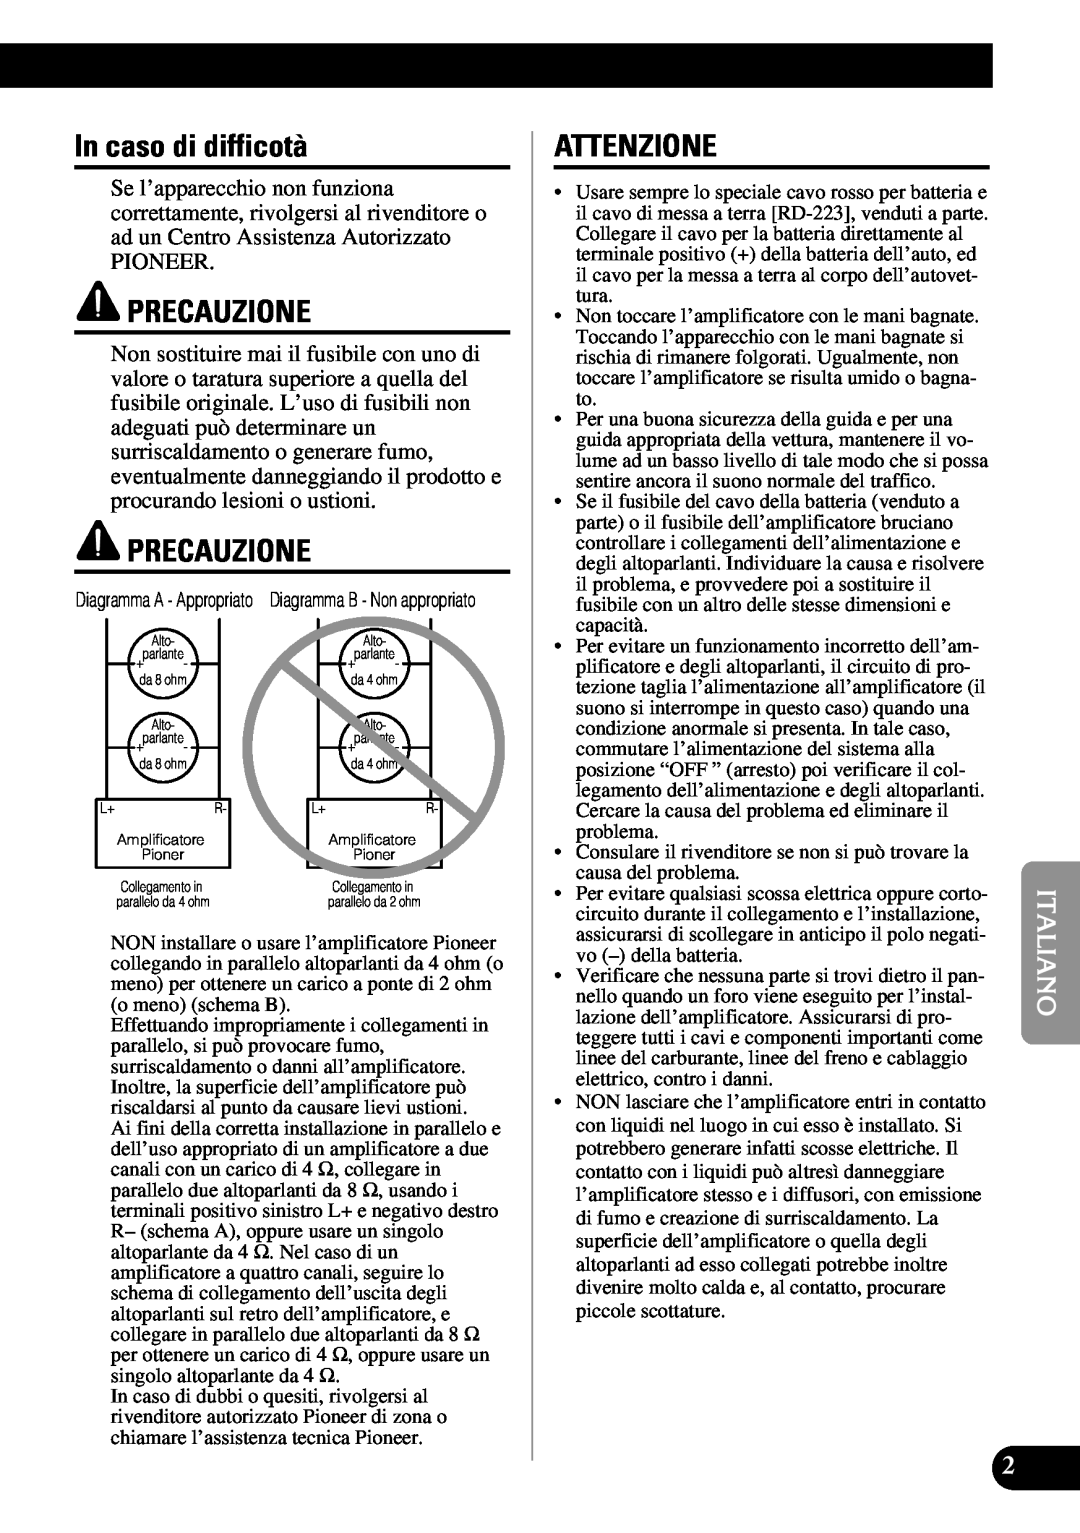 Pioneer PRS-D410 owner manual In caso di difficotà, Precauzione, Attenzione 